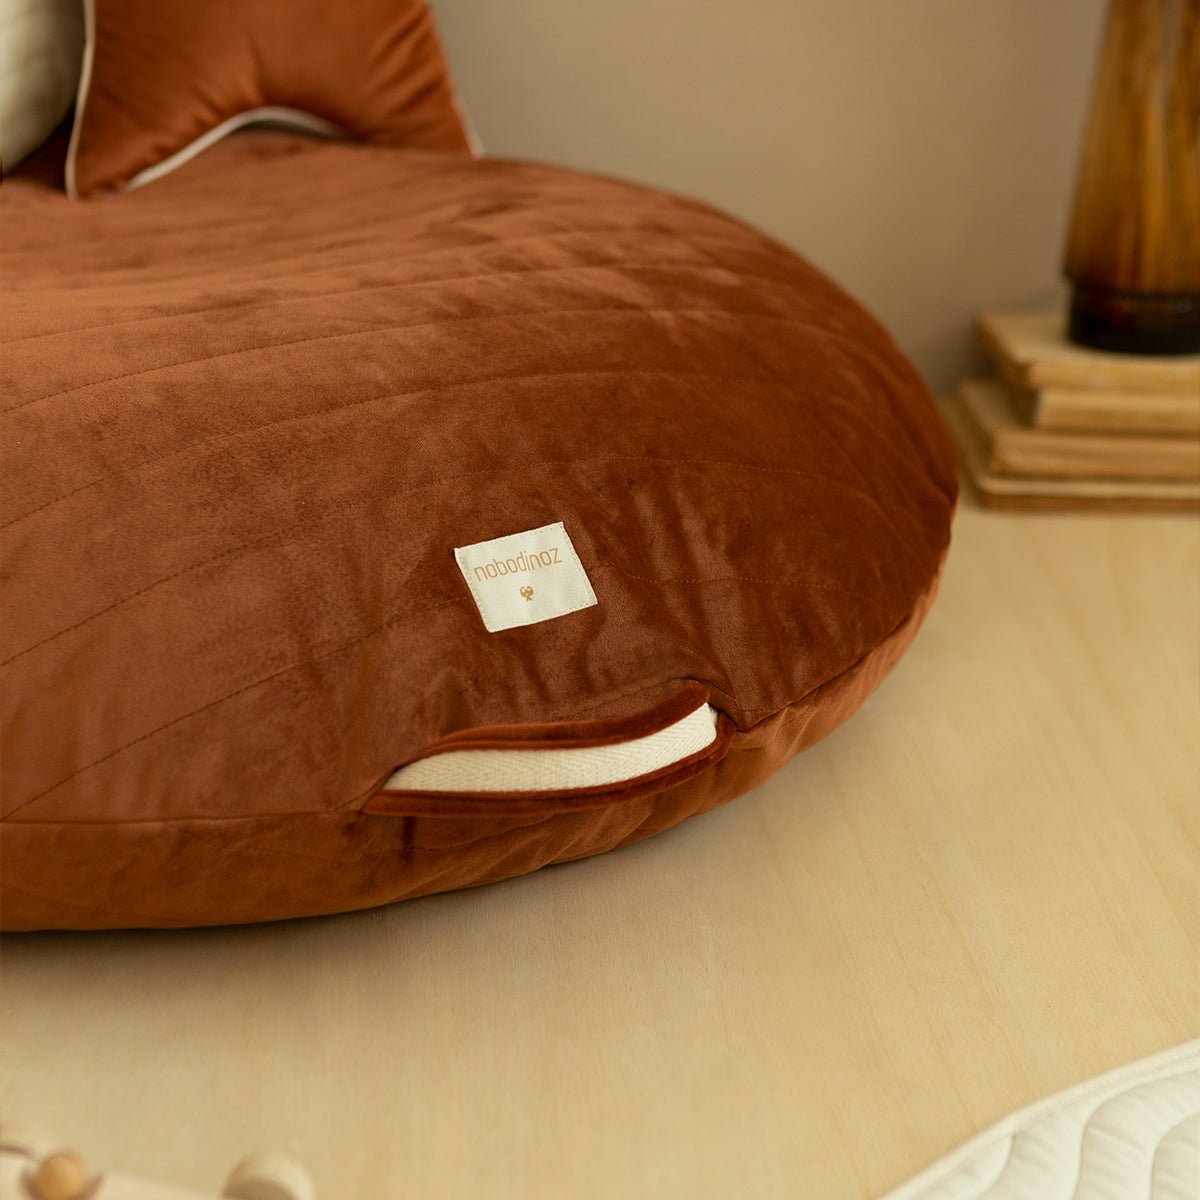 Het Nobodinoz Sahara velvet kussen wild brown uit de Savanna velvet collectie is heerlijk om op te liggen, zitten en spelen. De zitzak is gemaakt van hoogwaardig materiaal en heeft een luxe uitstraling door het zachte velvet. VanZus